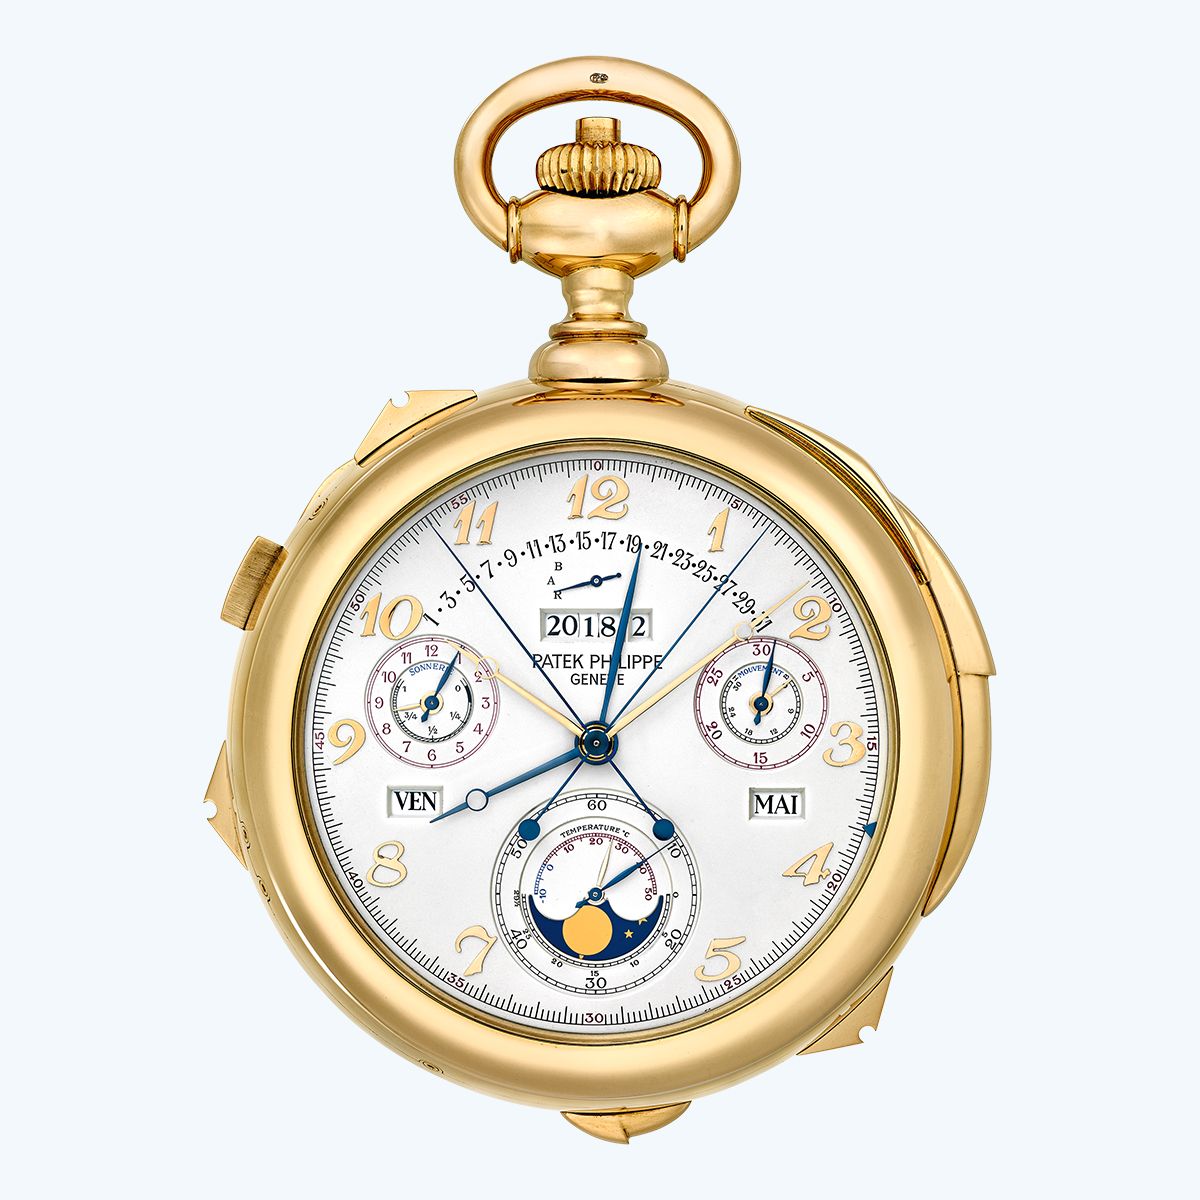 «Калибр 89», самые сложные переносные часы в мире, созданные в период с 1980 по 1989 год в честь стопятидесятилетнего юбилея Patek Philippe